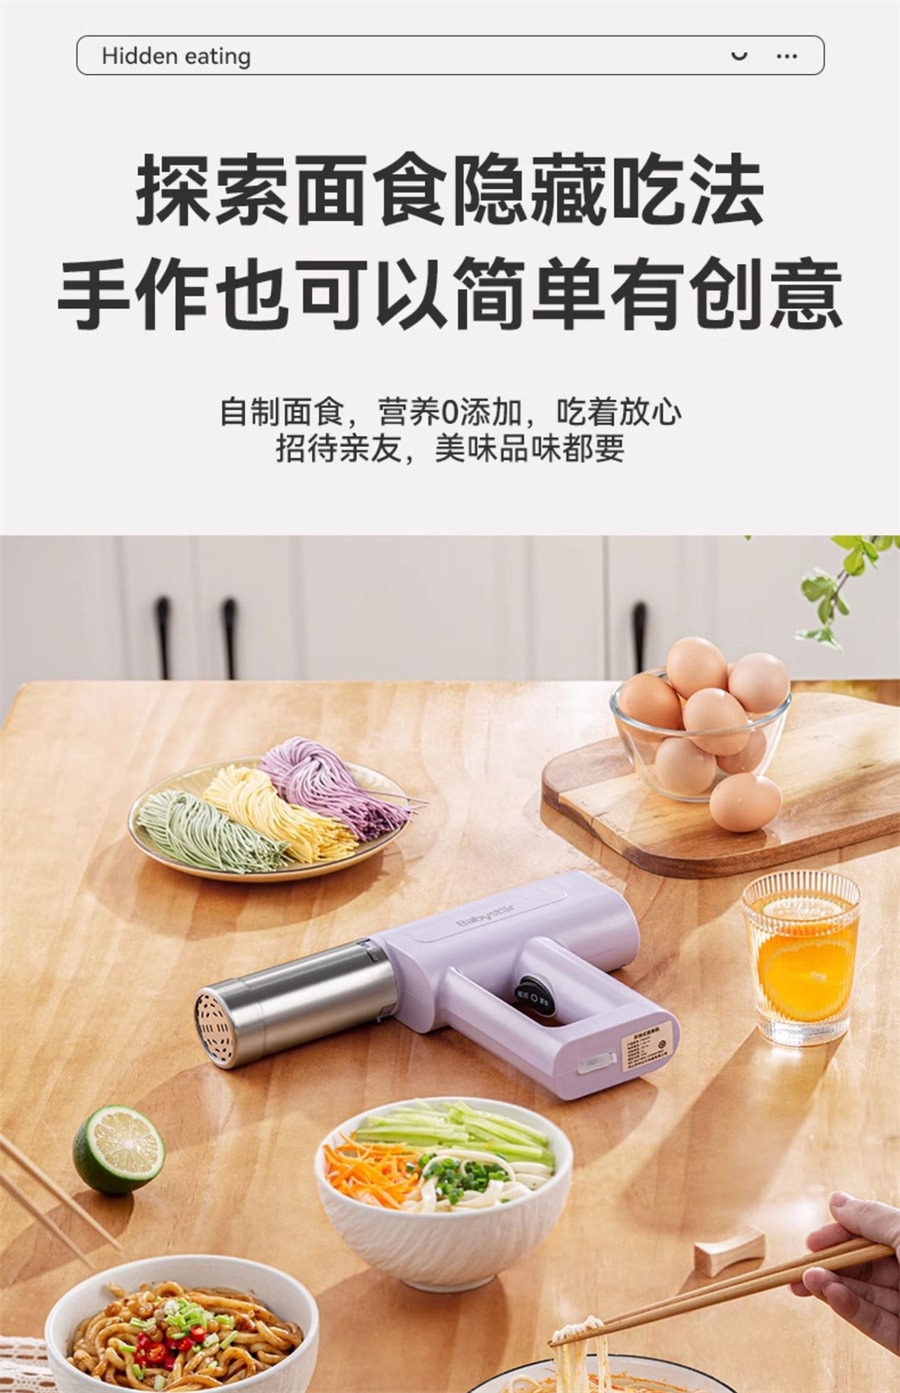 【中国直邮】BABYSTAR  面条机全自动家用压面机手持小型电动饸饹面机  香芋紫